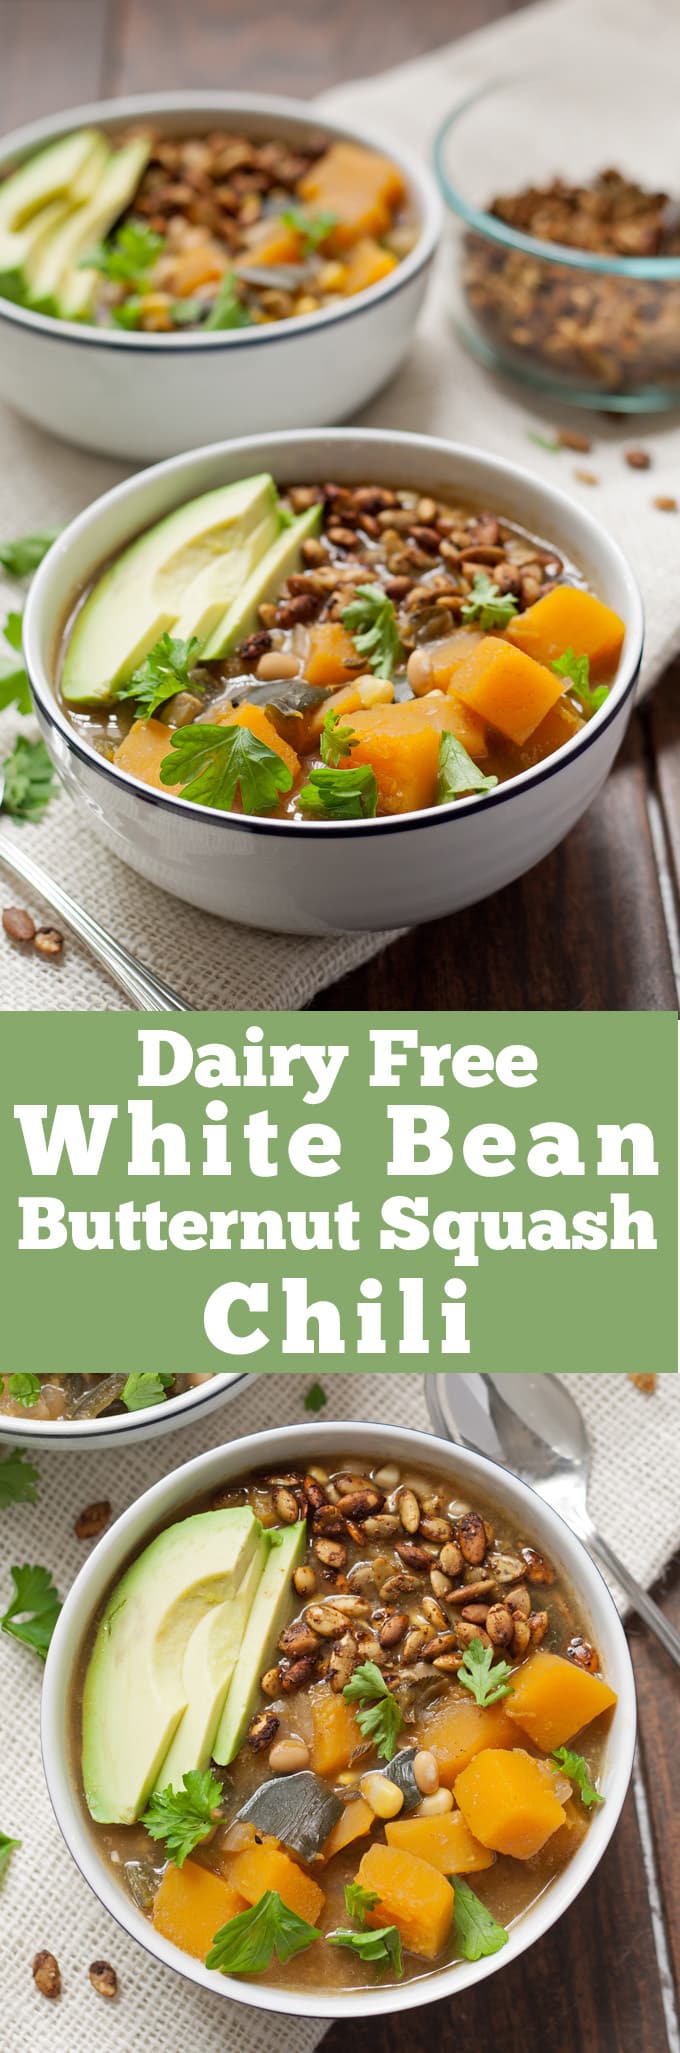 Dairy Free White Bean Butternut Squash Chili - perfect for tailgating! | honeyandbirch.com